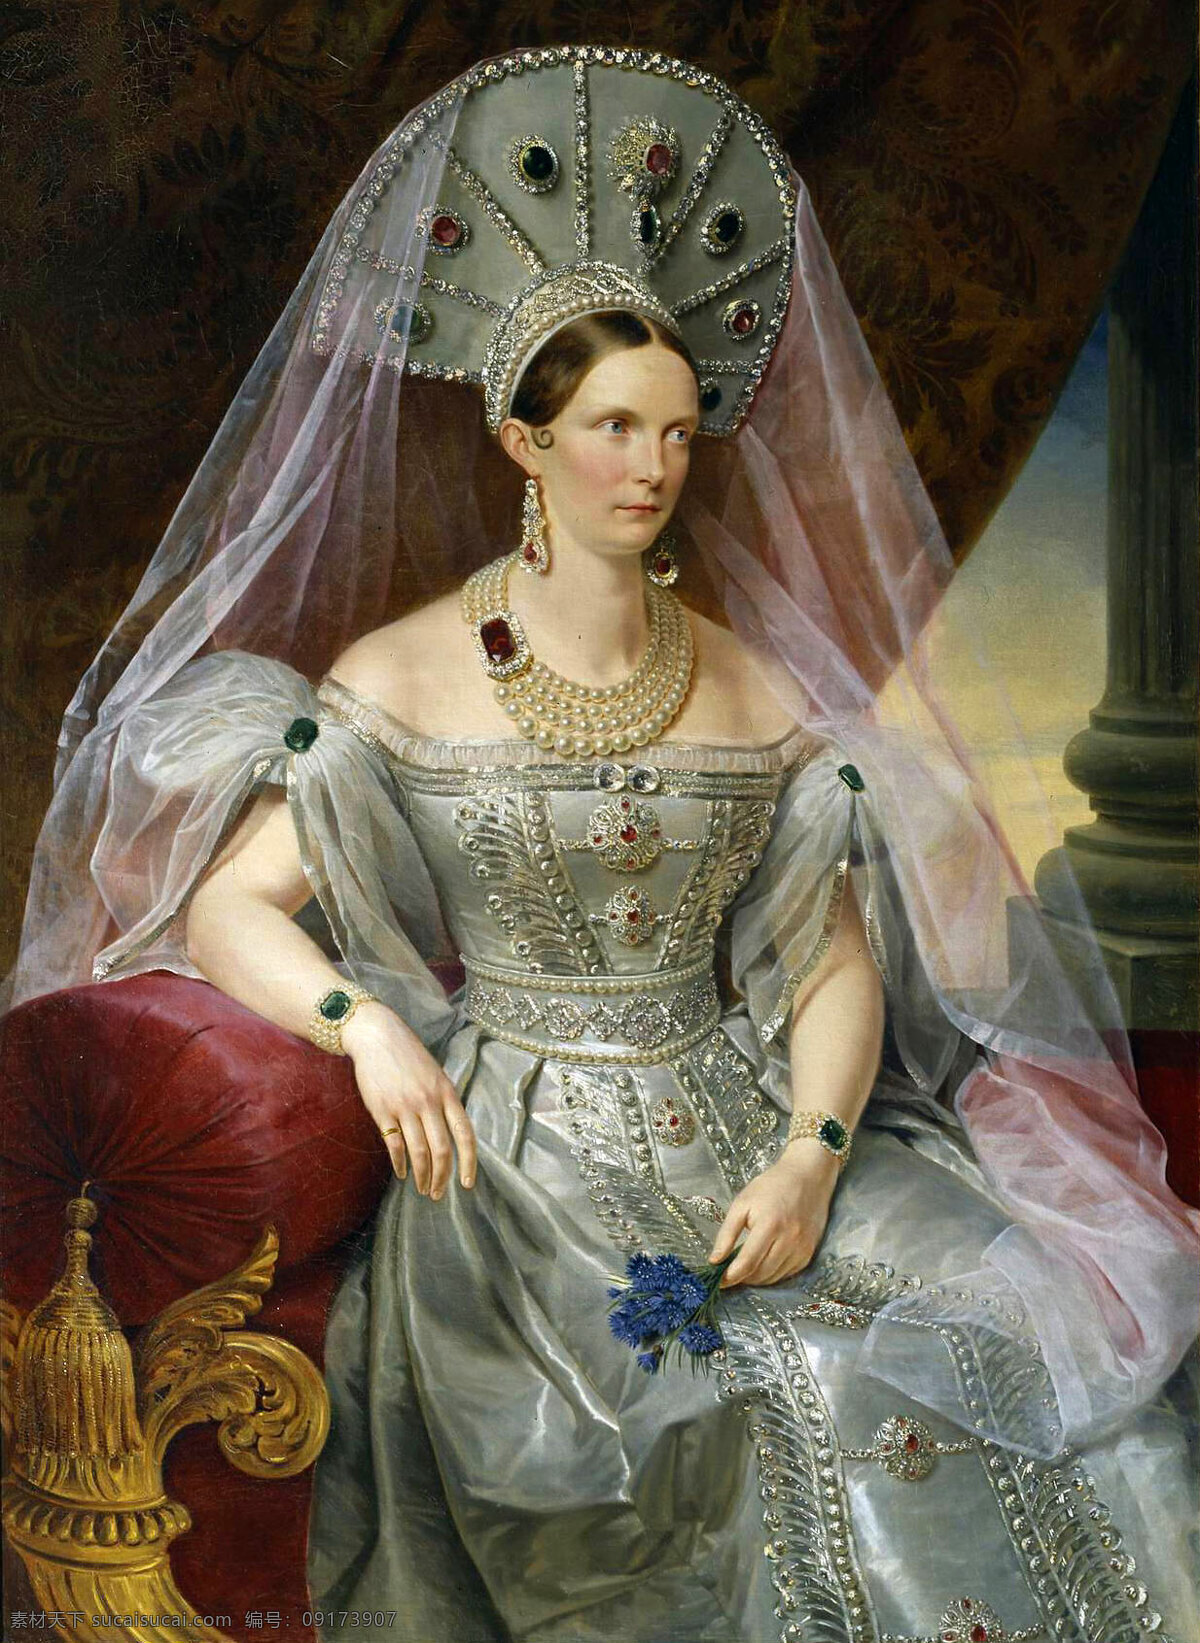 俄国 皇后 亚历山德拉 费奥多 罗 芙娜 普鲁士 公主 夏洛 持 尼古拉 一世 亚历山大 二世 母 19世纪油画 油画 绘画书法 文化艺术